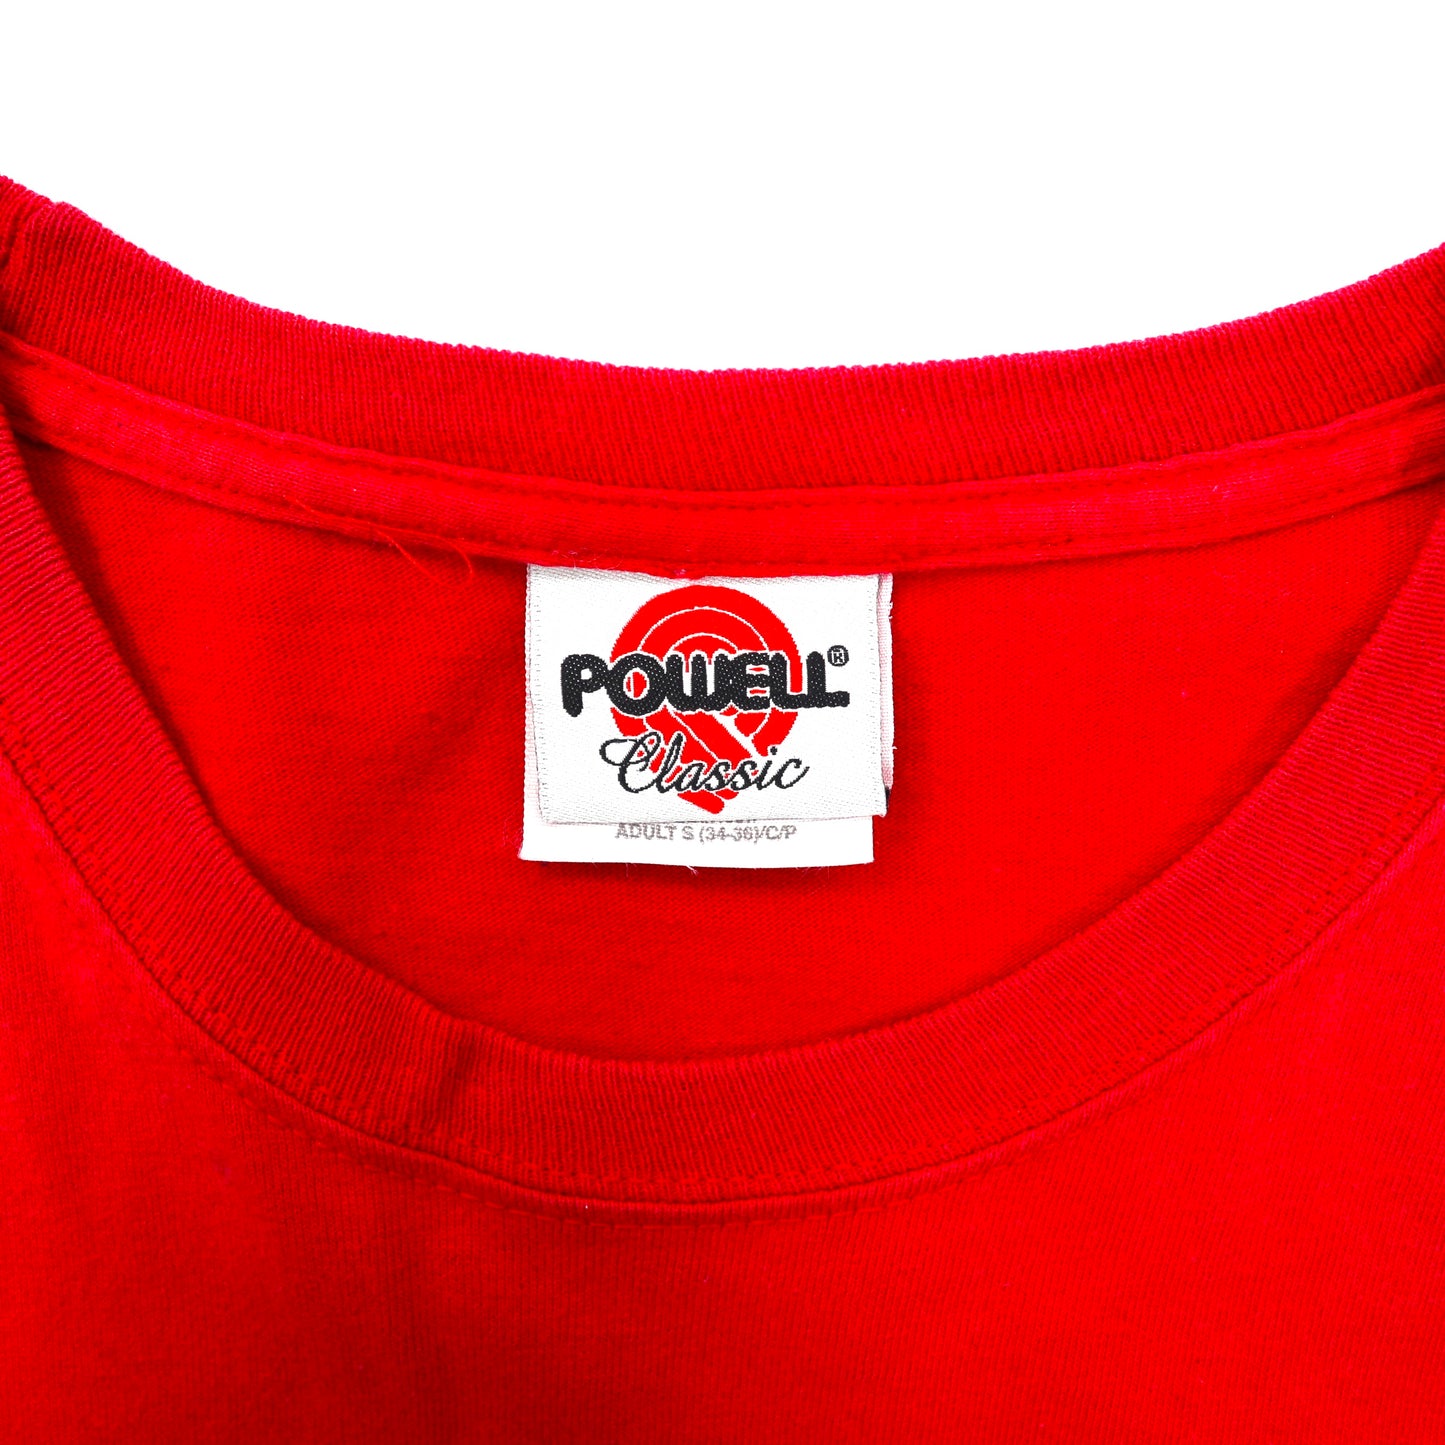 POWELL CLASSIC Tシャツ S レッド スカルソード 90年代